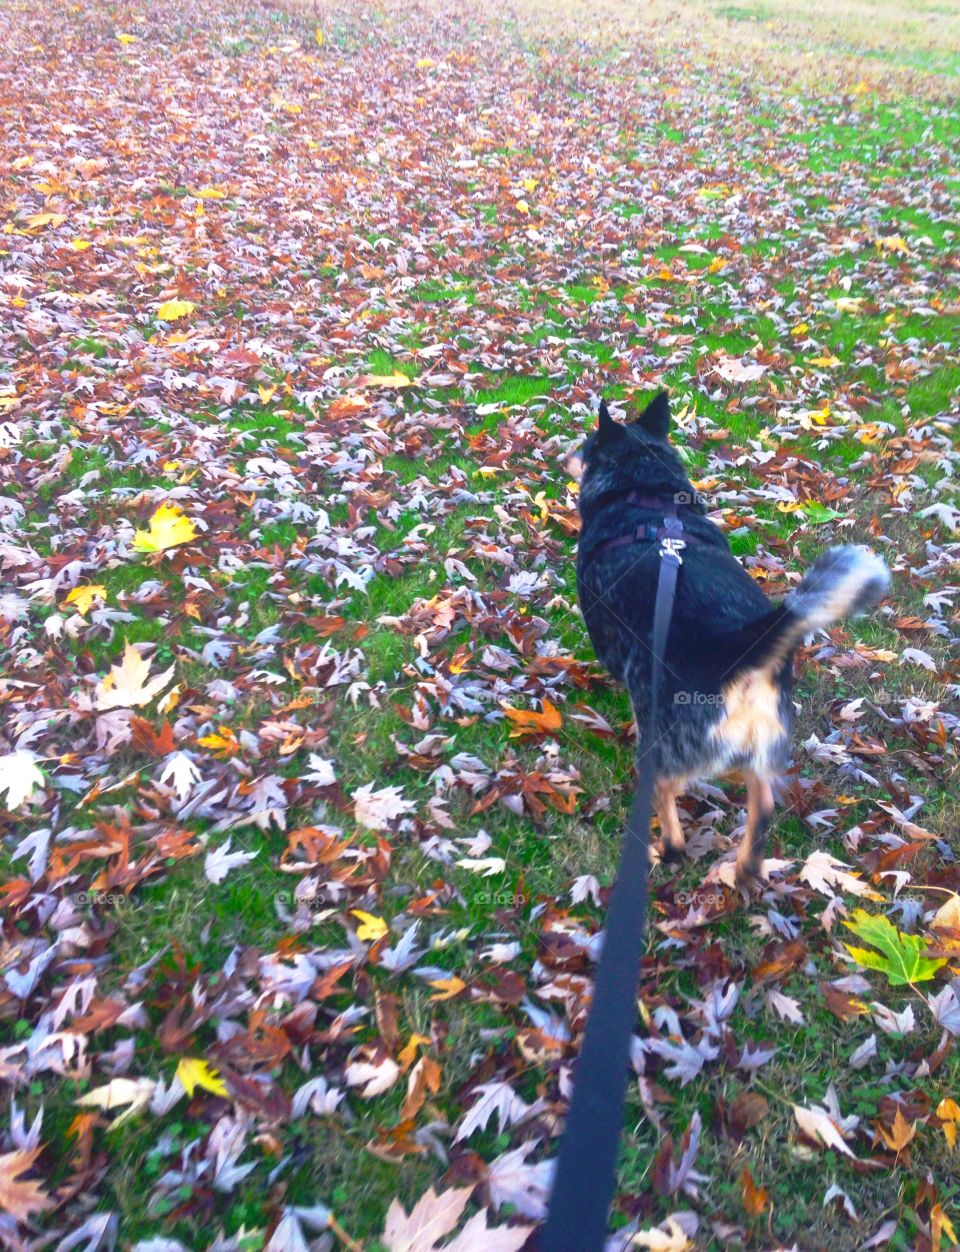 Autumn Dog Walk